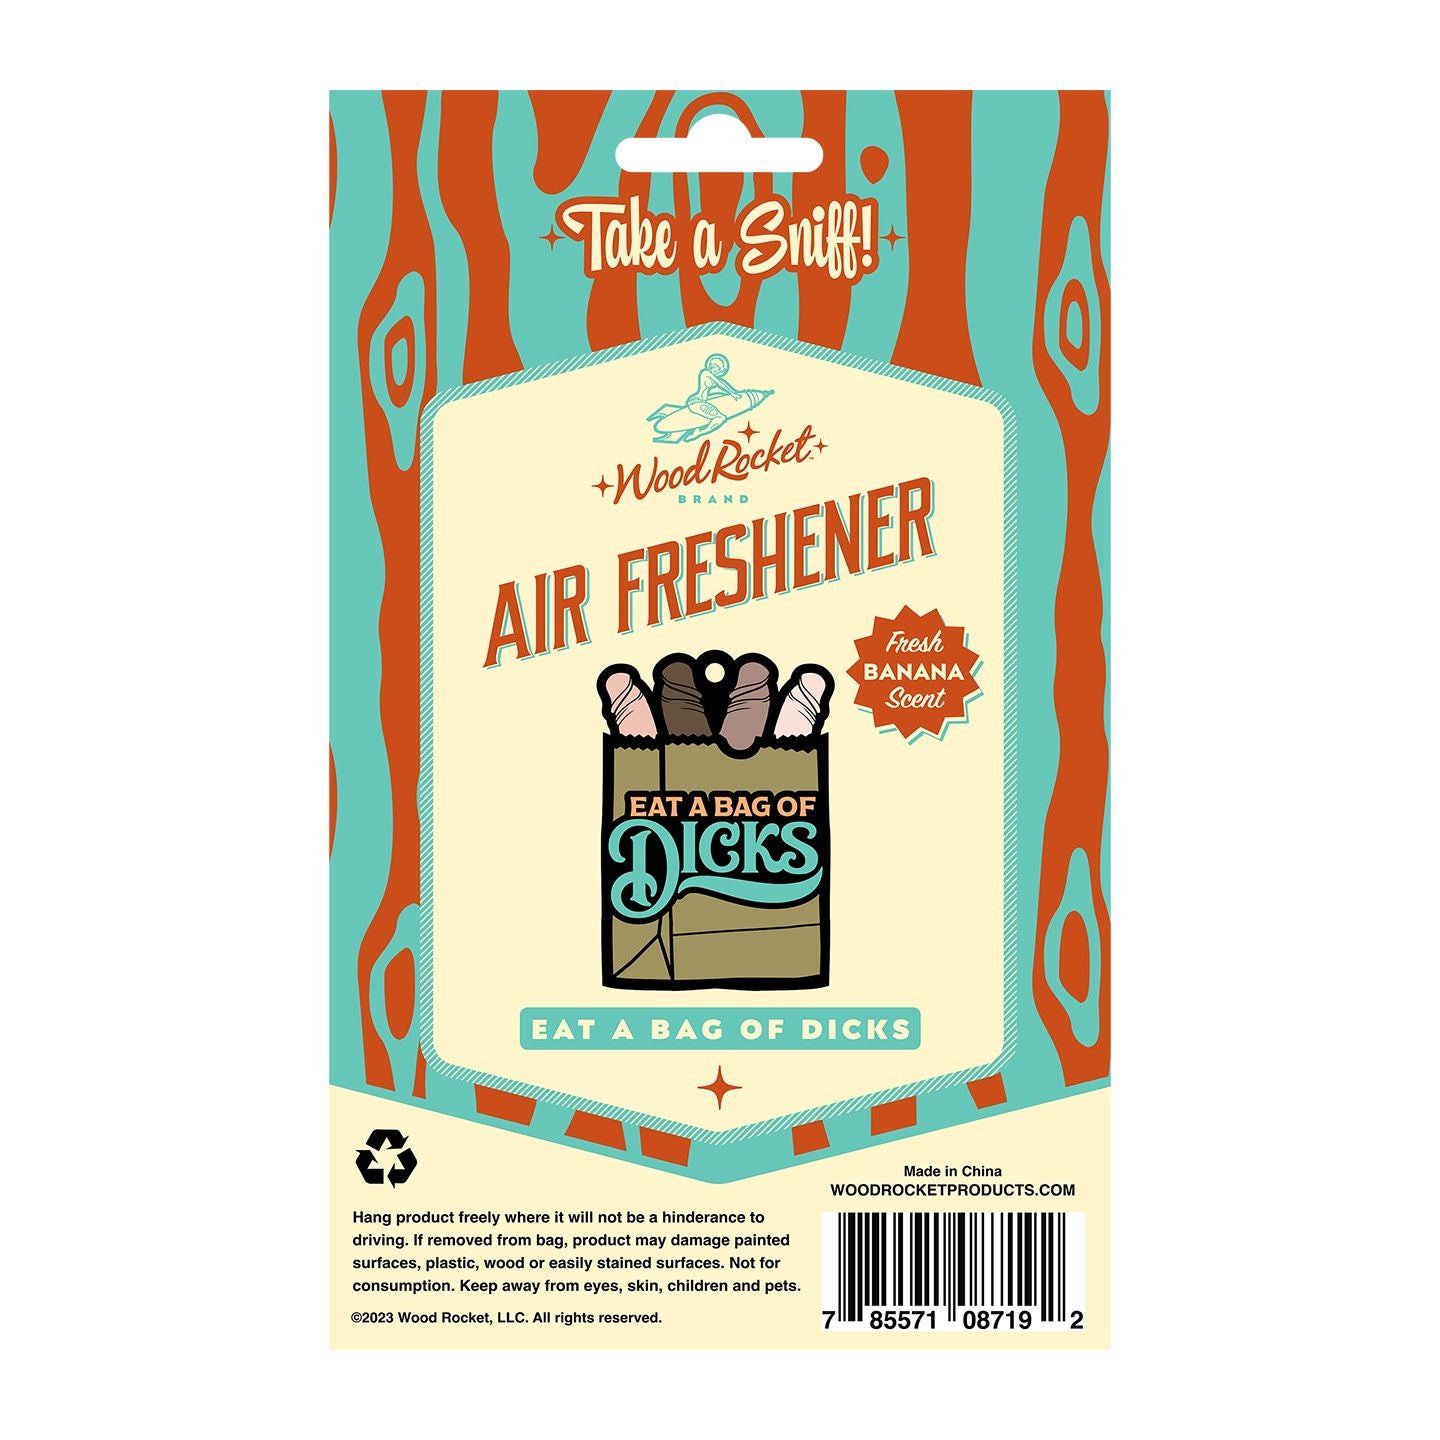 Eat A Bag Of Dicks Air Freshener